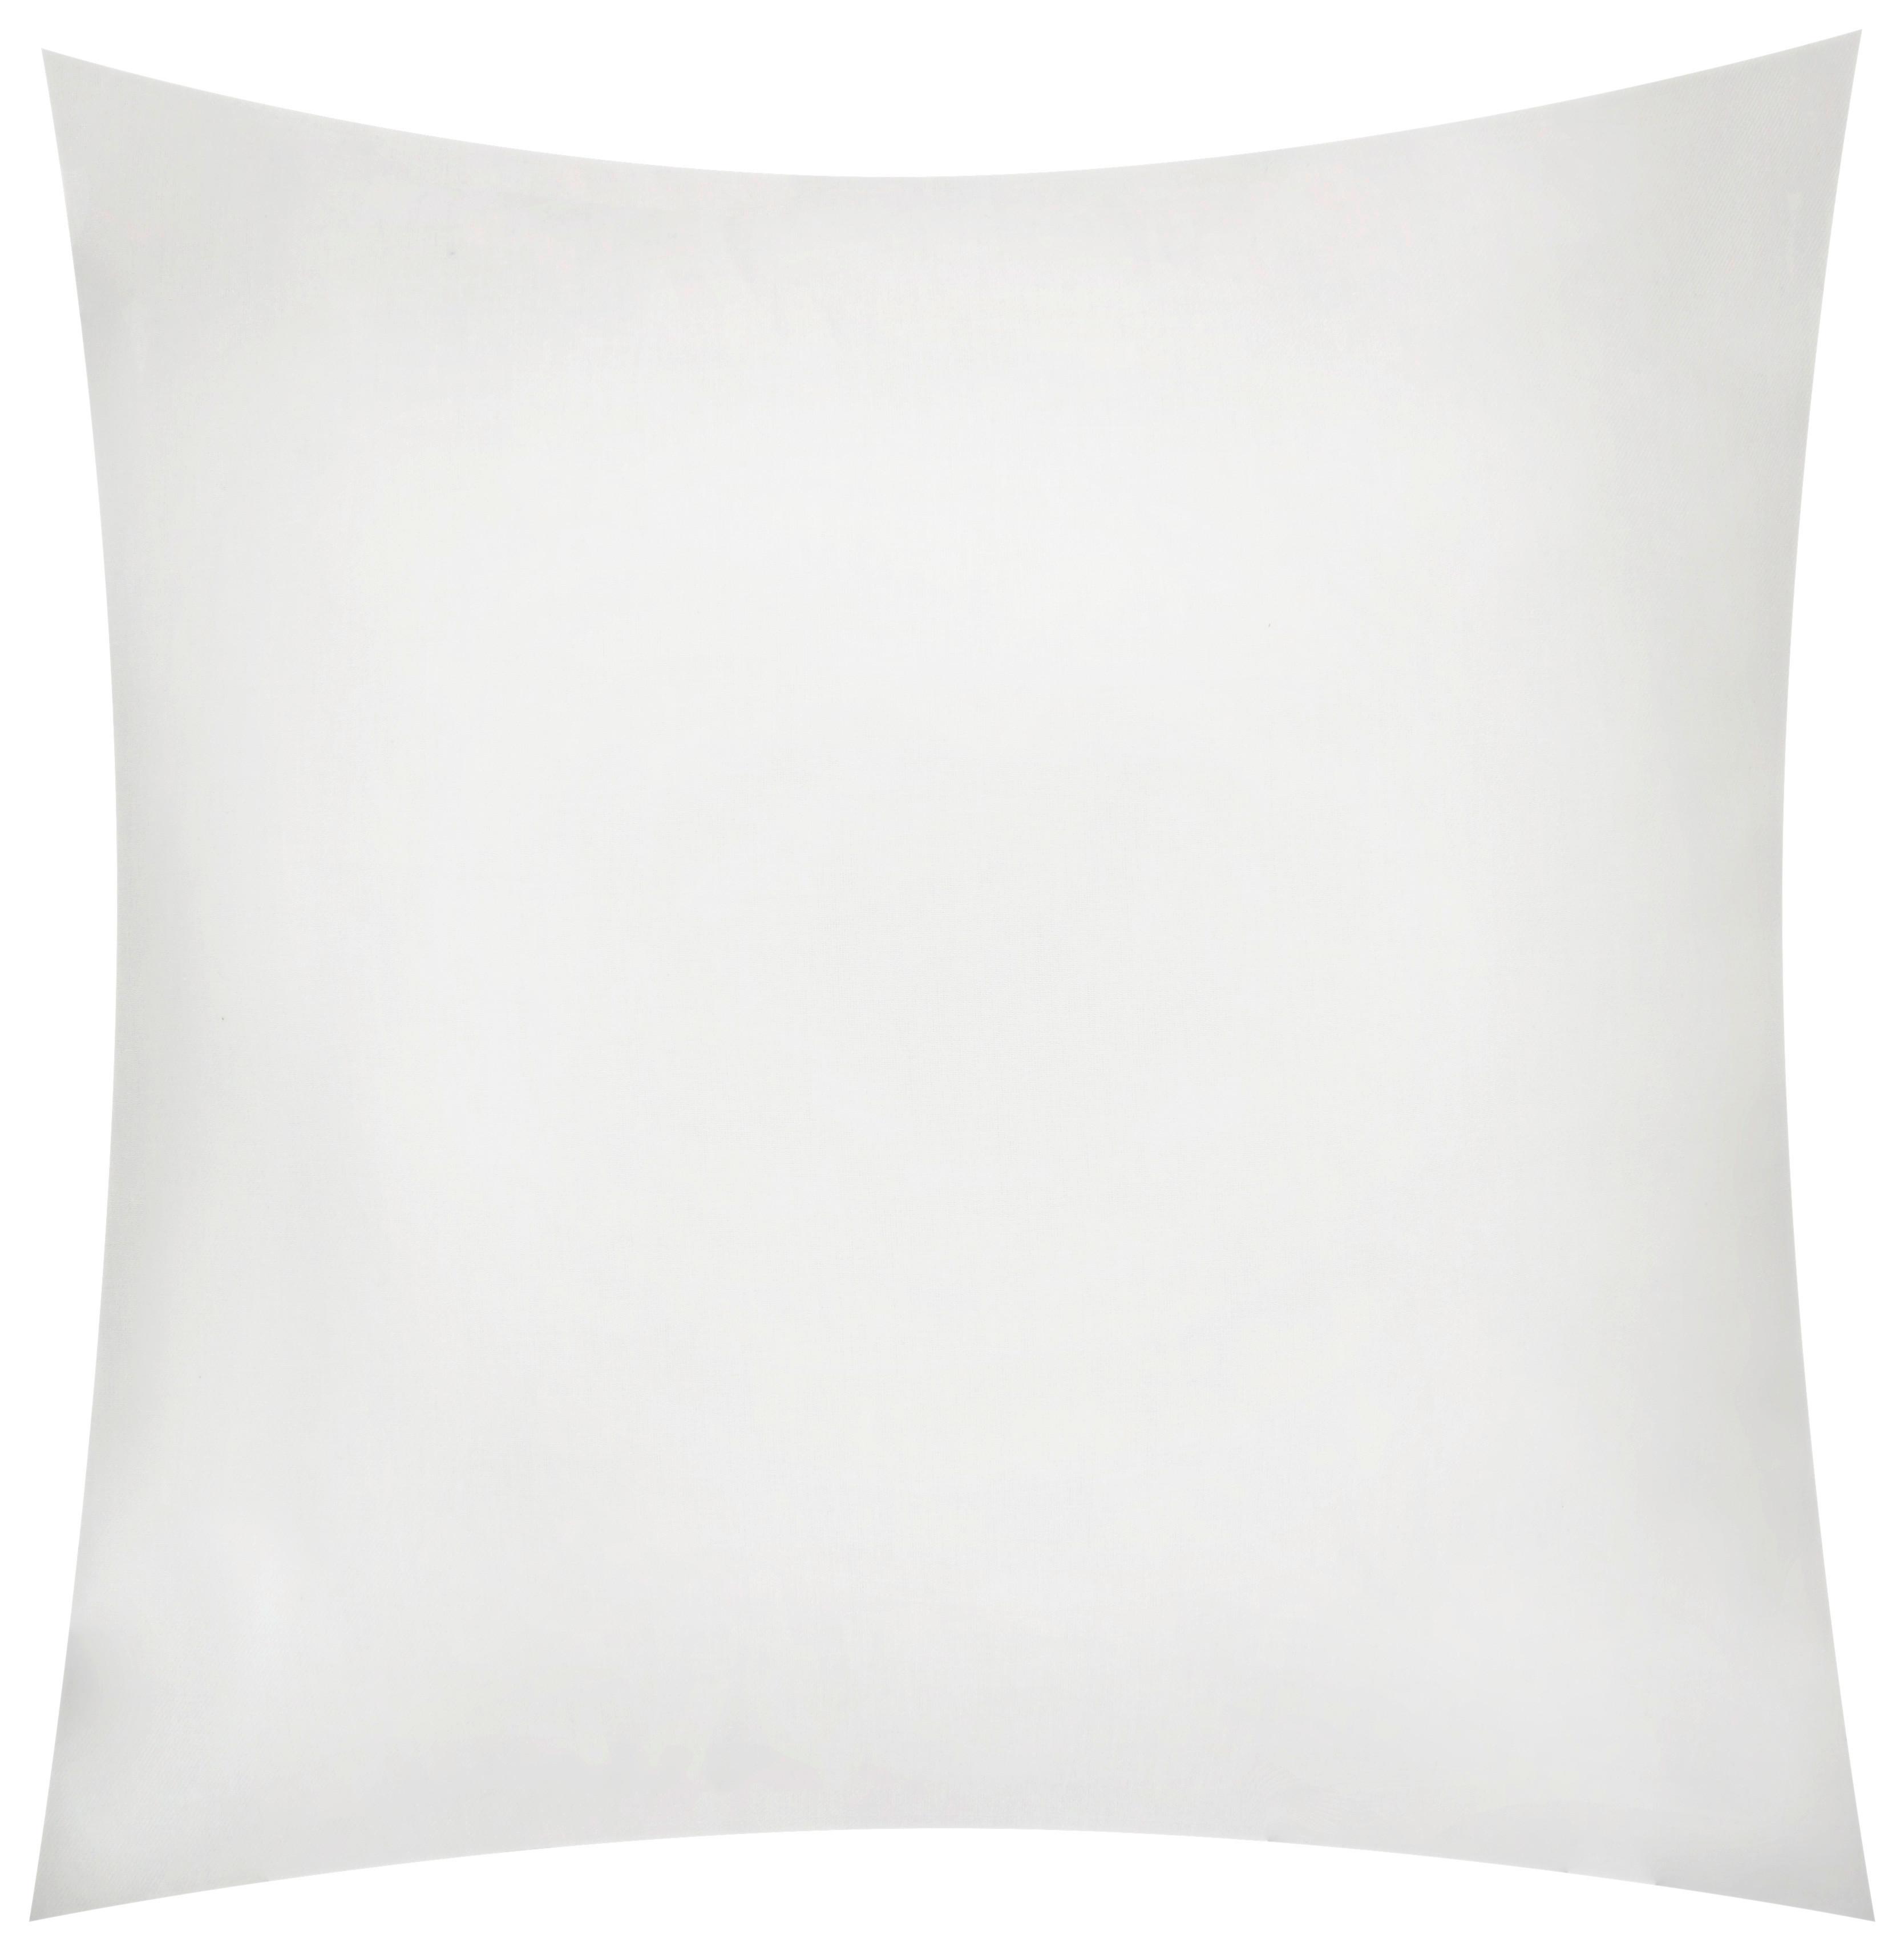 Polštář Ozdobný Bigmex, 65/65cm, Bílá - bílá, textil (65/65cm) - Modern Living